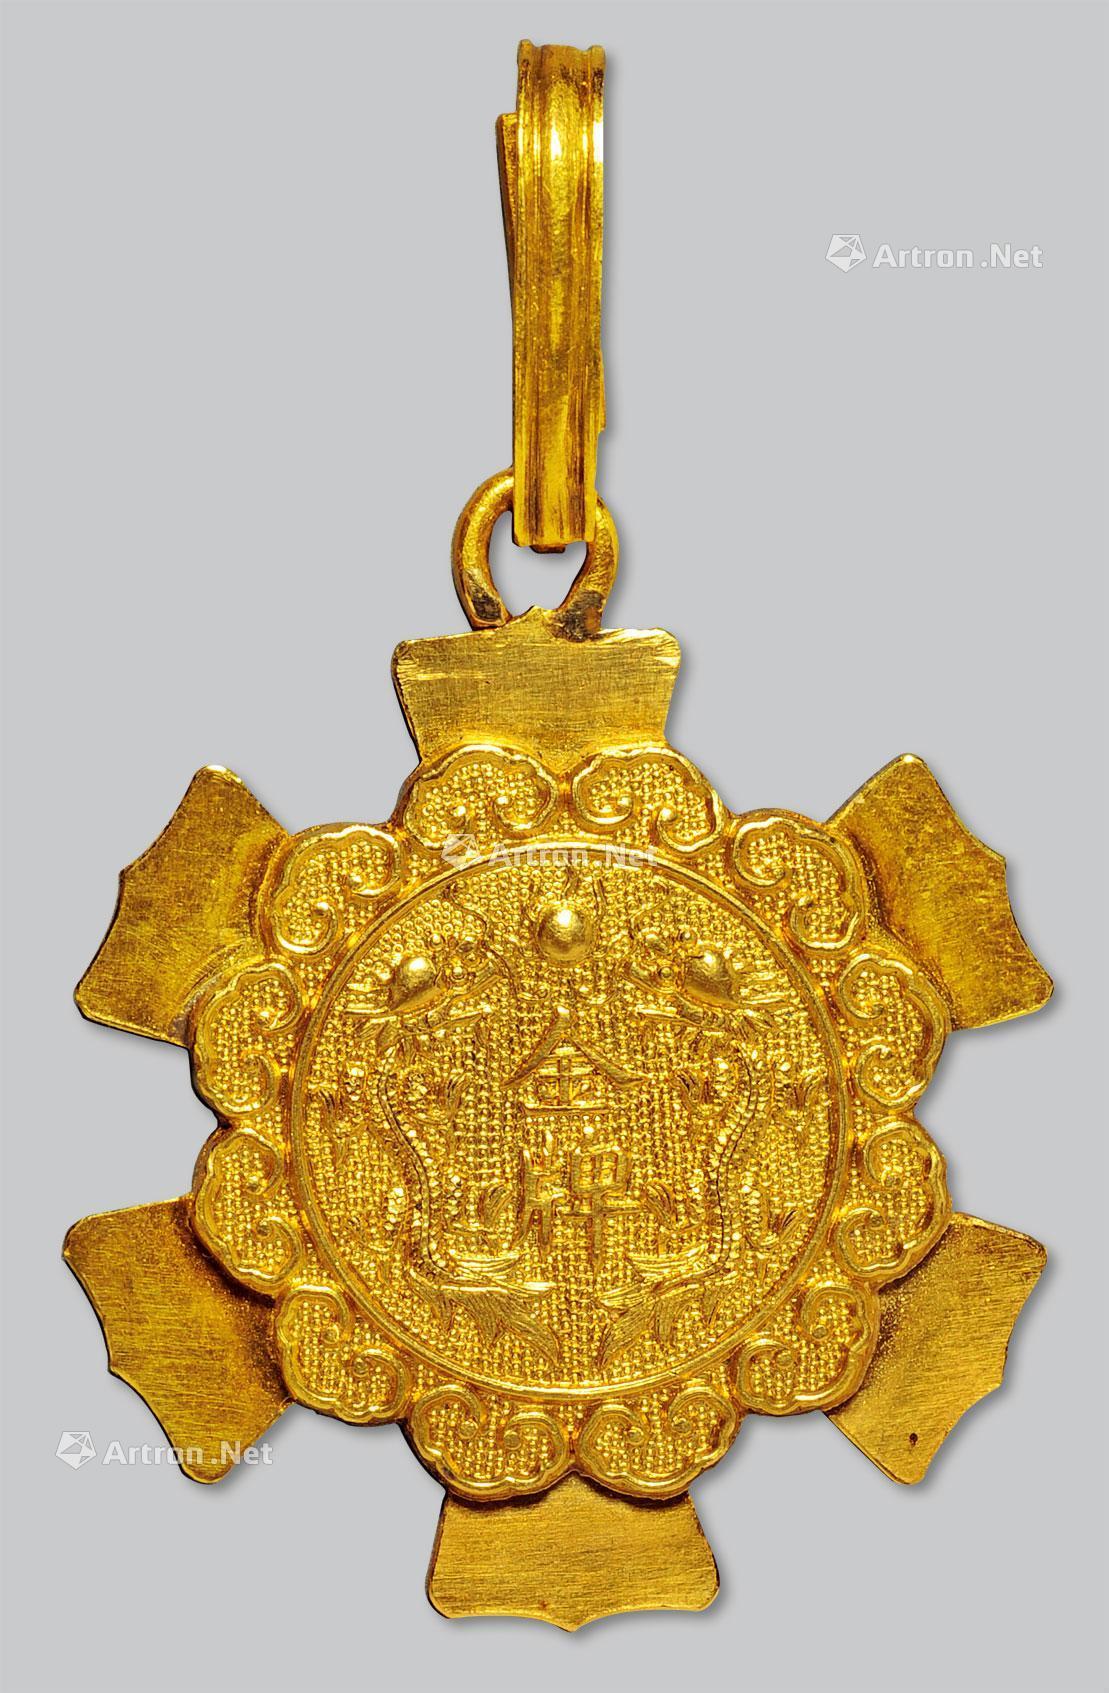 1625 清代勋章型双龙戏珠纹金牌一枚